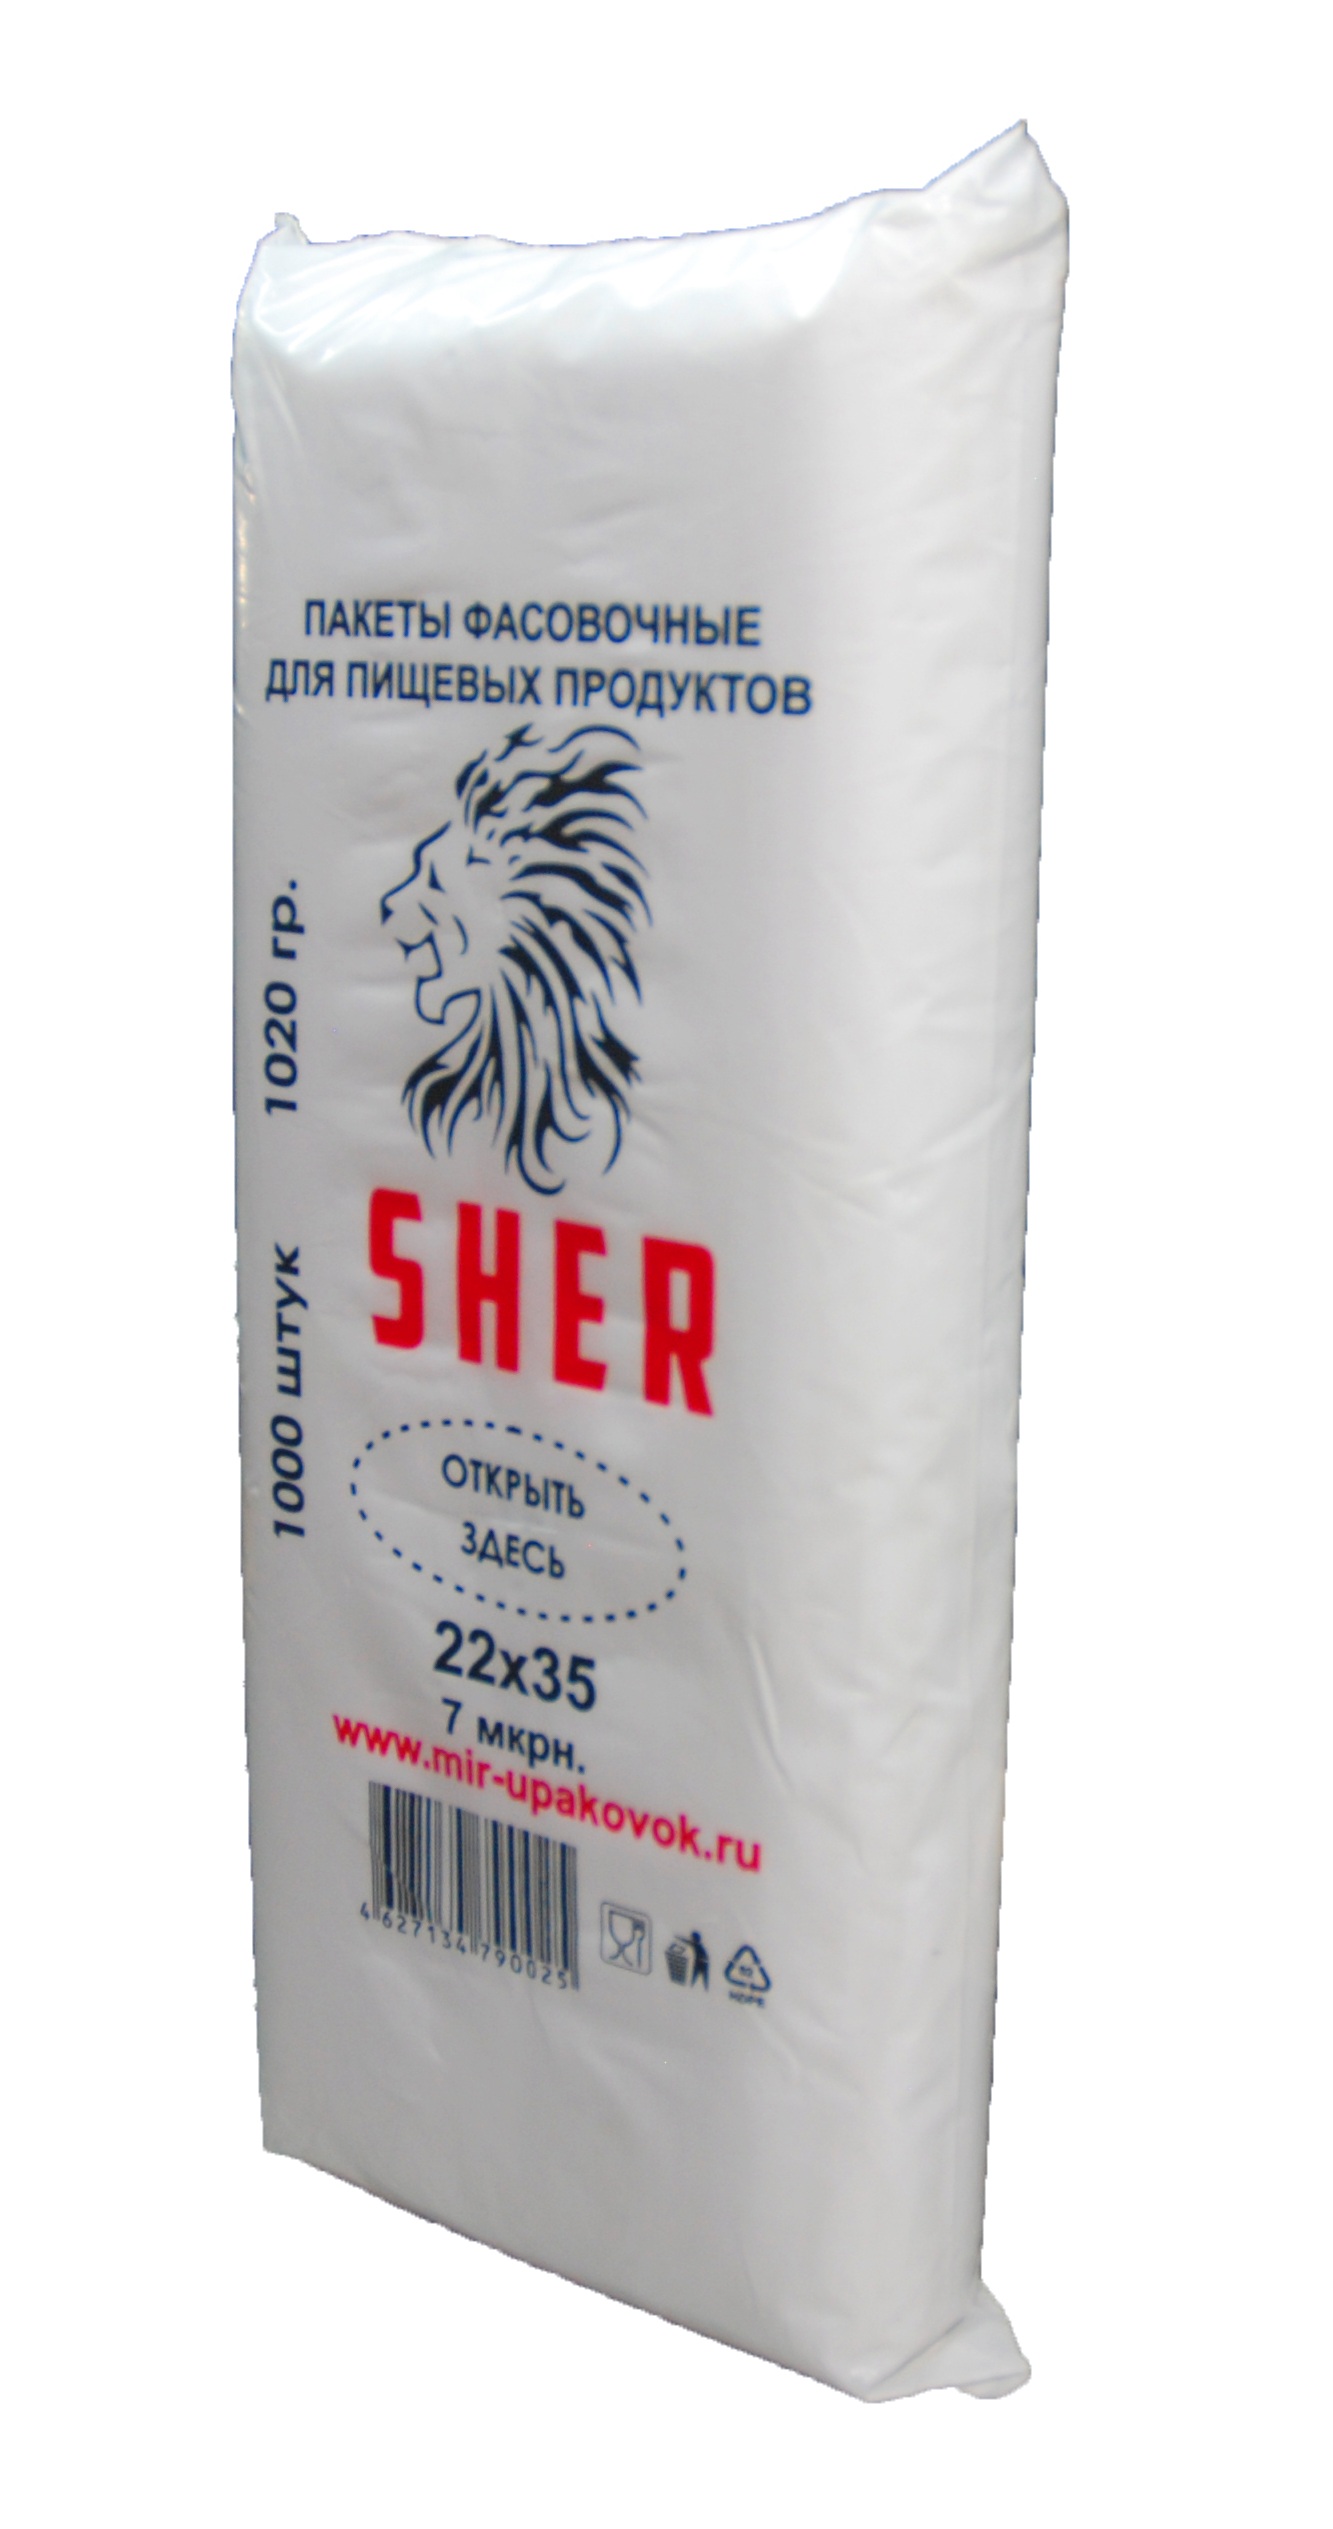 фото Упаковка  Пакеты фасовочные для пищевых продуктов "SHER" 22х35 1000 шт, прозрачный